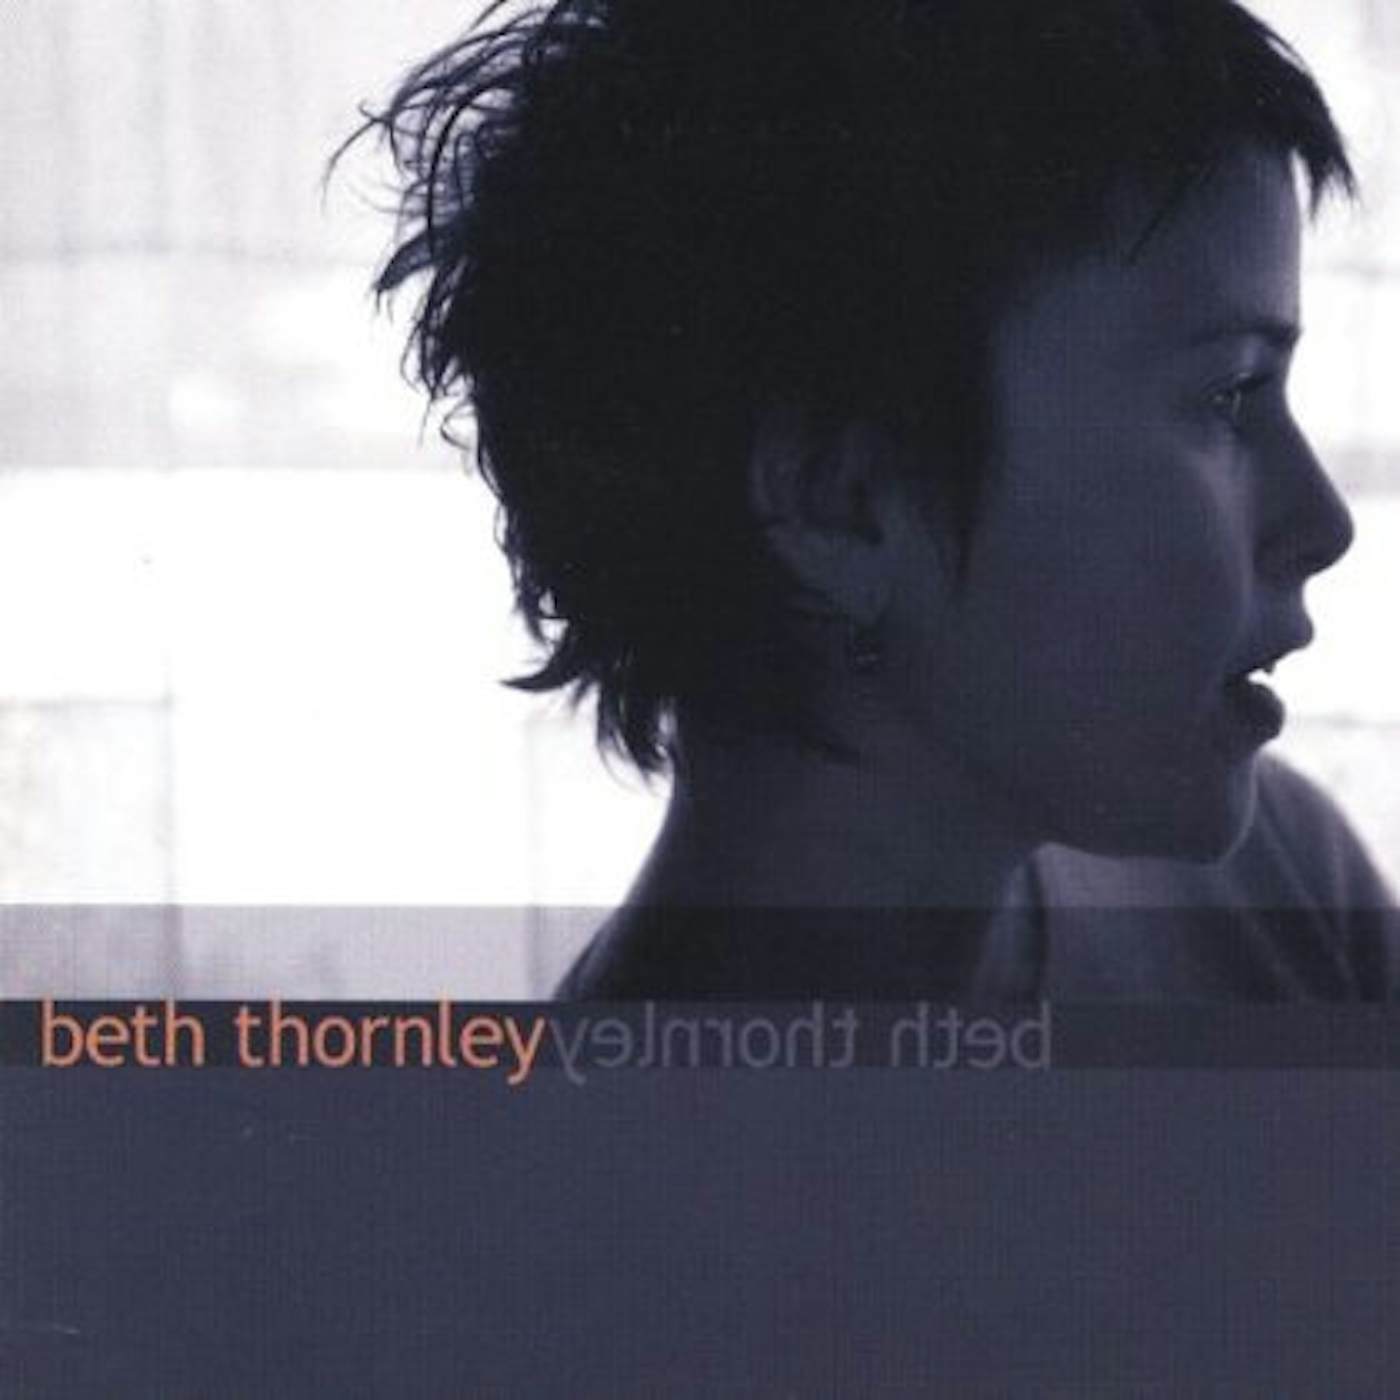 BETH THORNLEY CD